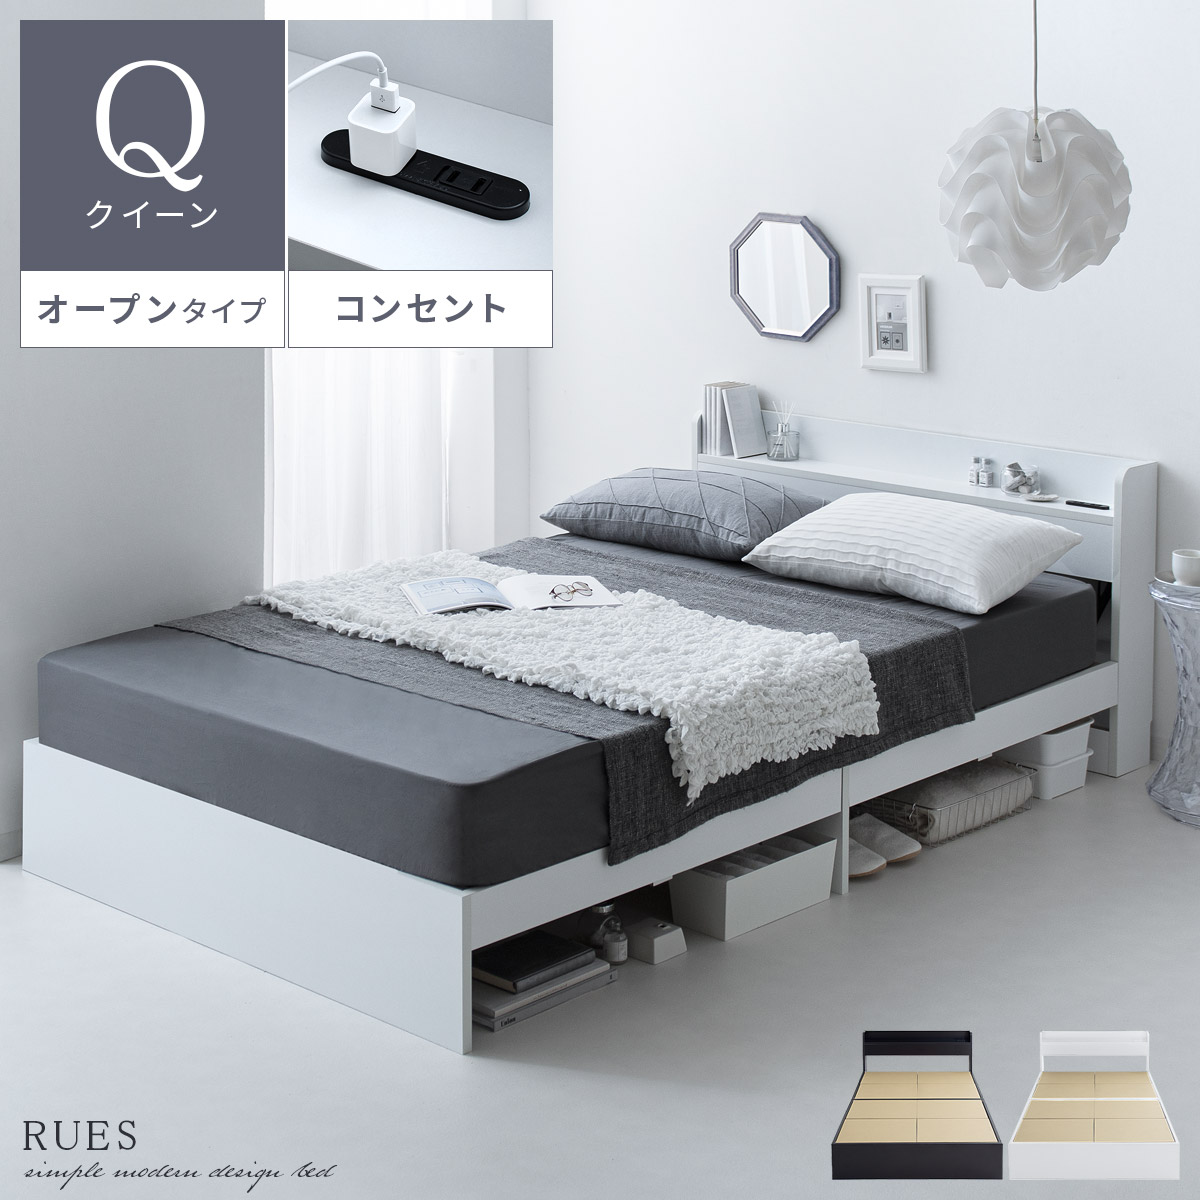 ベッドフレーム RUES(ルース) オープンタイプ フレーム単体販売 クイーンサイズ 【公式】 エア・リゾーム インテリア・家具通販